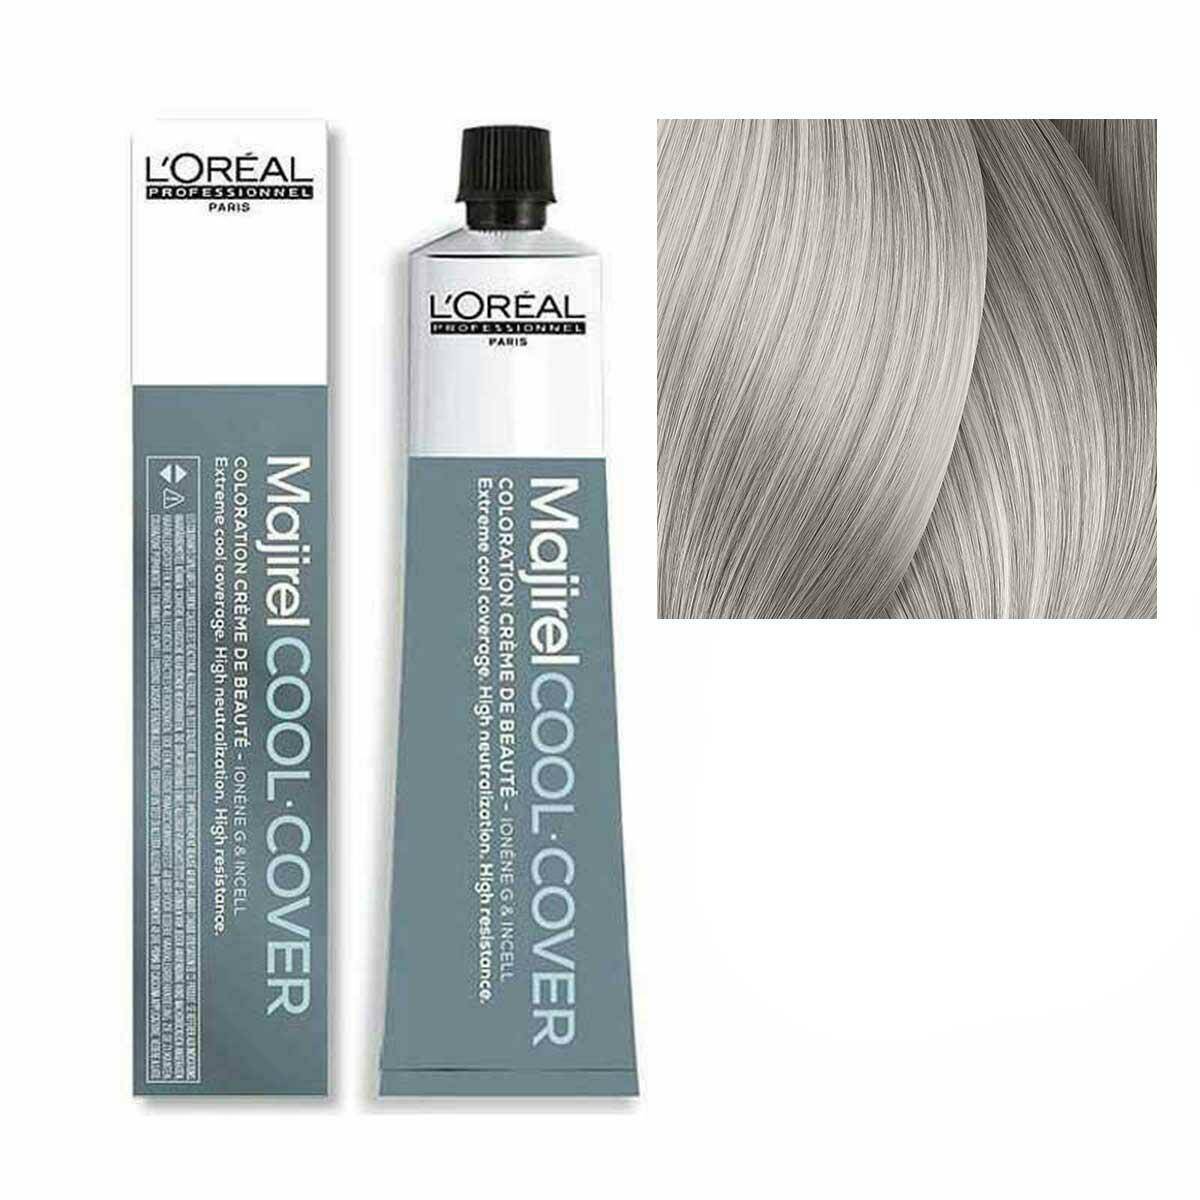 Loreal Majirel Cool Cover Farba do włosów - 10.1 Bardzo bardzo jasny blond popielaty, chłodne odcienie 50ml